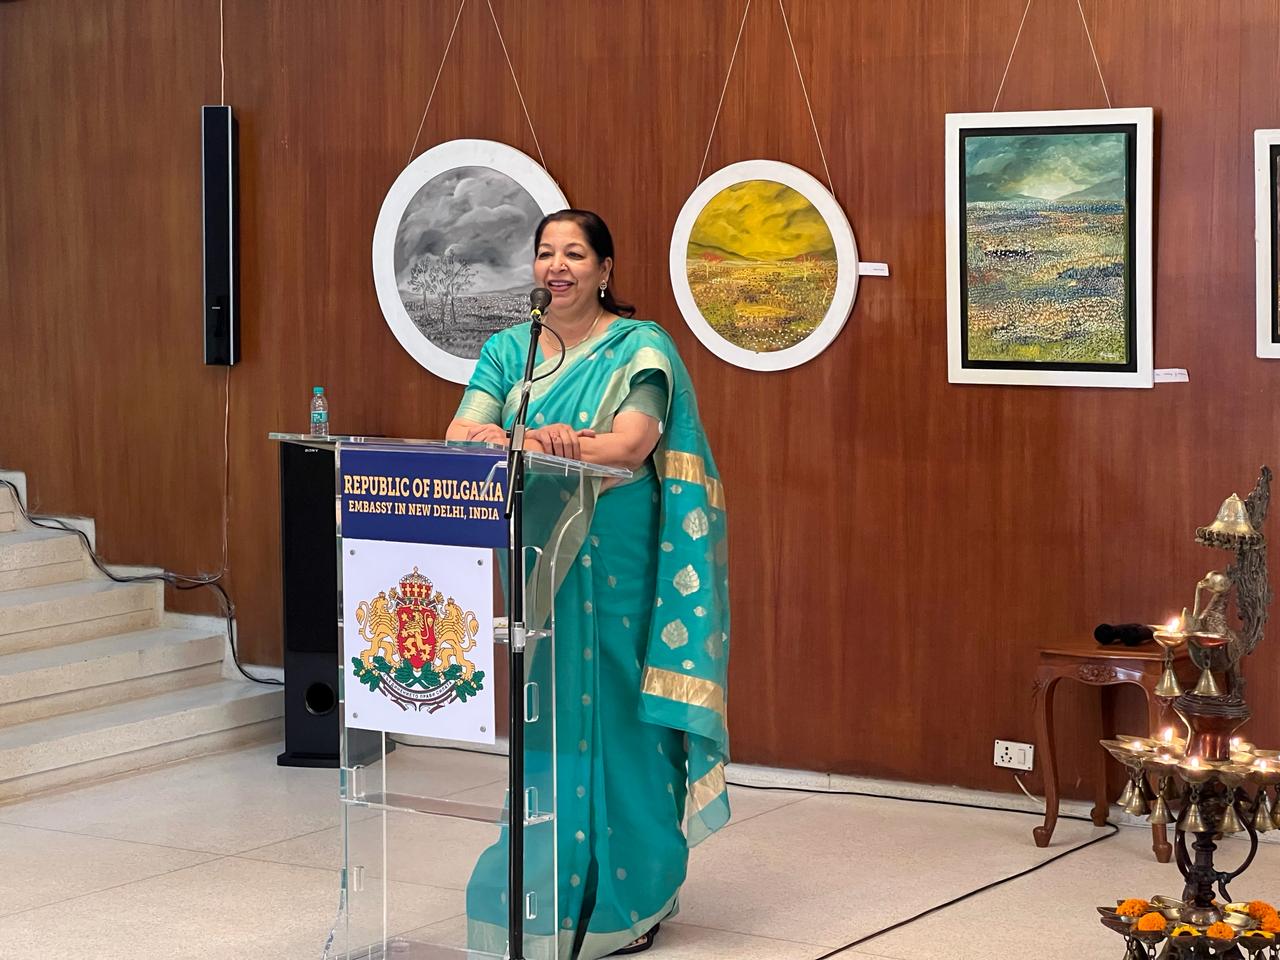 В посолството в Делхи бе официално открита изложба на тема “Indo-European Art Impressions” с картини на индийската художничка Киран Сони Гупта